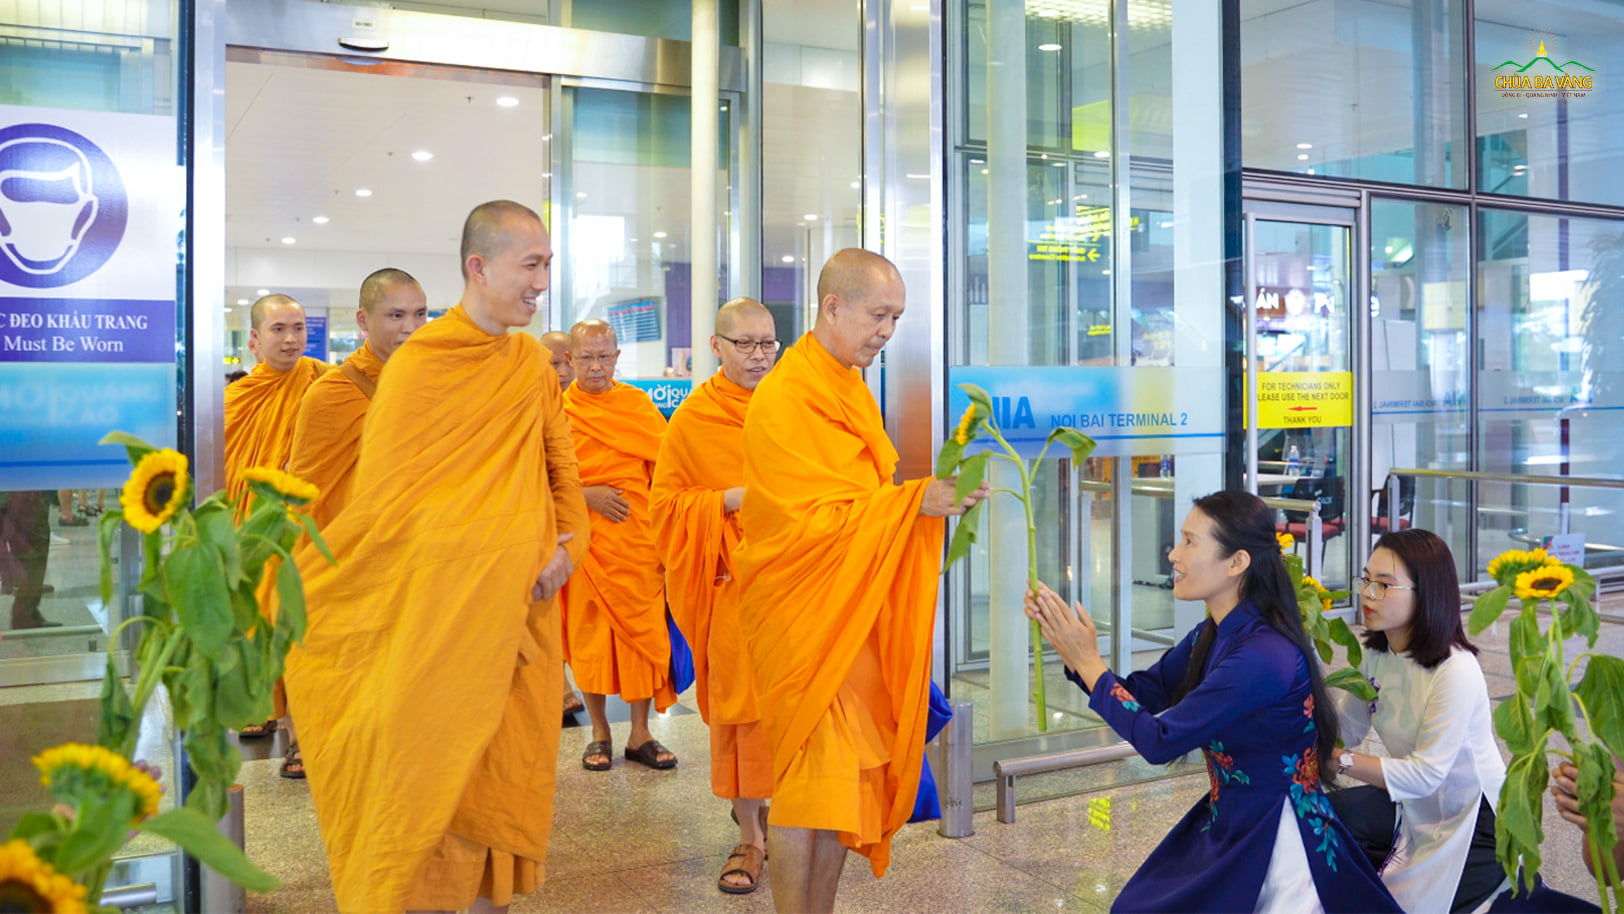 Phật tử cung kính dâng hoa cúng dường chư Tăng chùa Dhammakaya (Thái Lan) tại sân bay Nội Bài